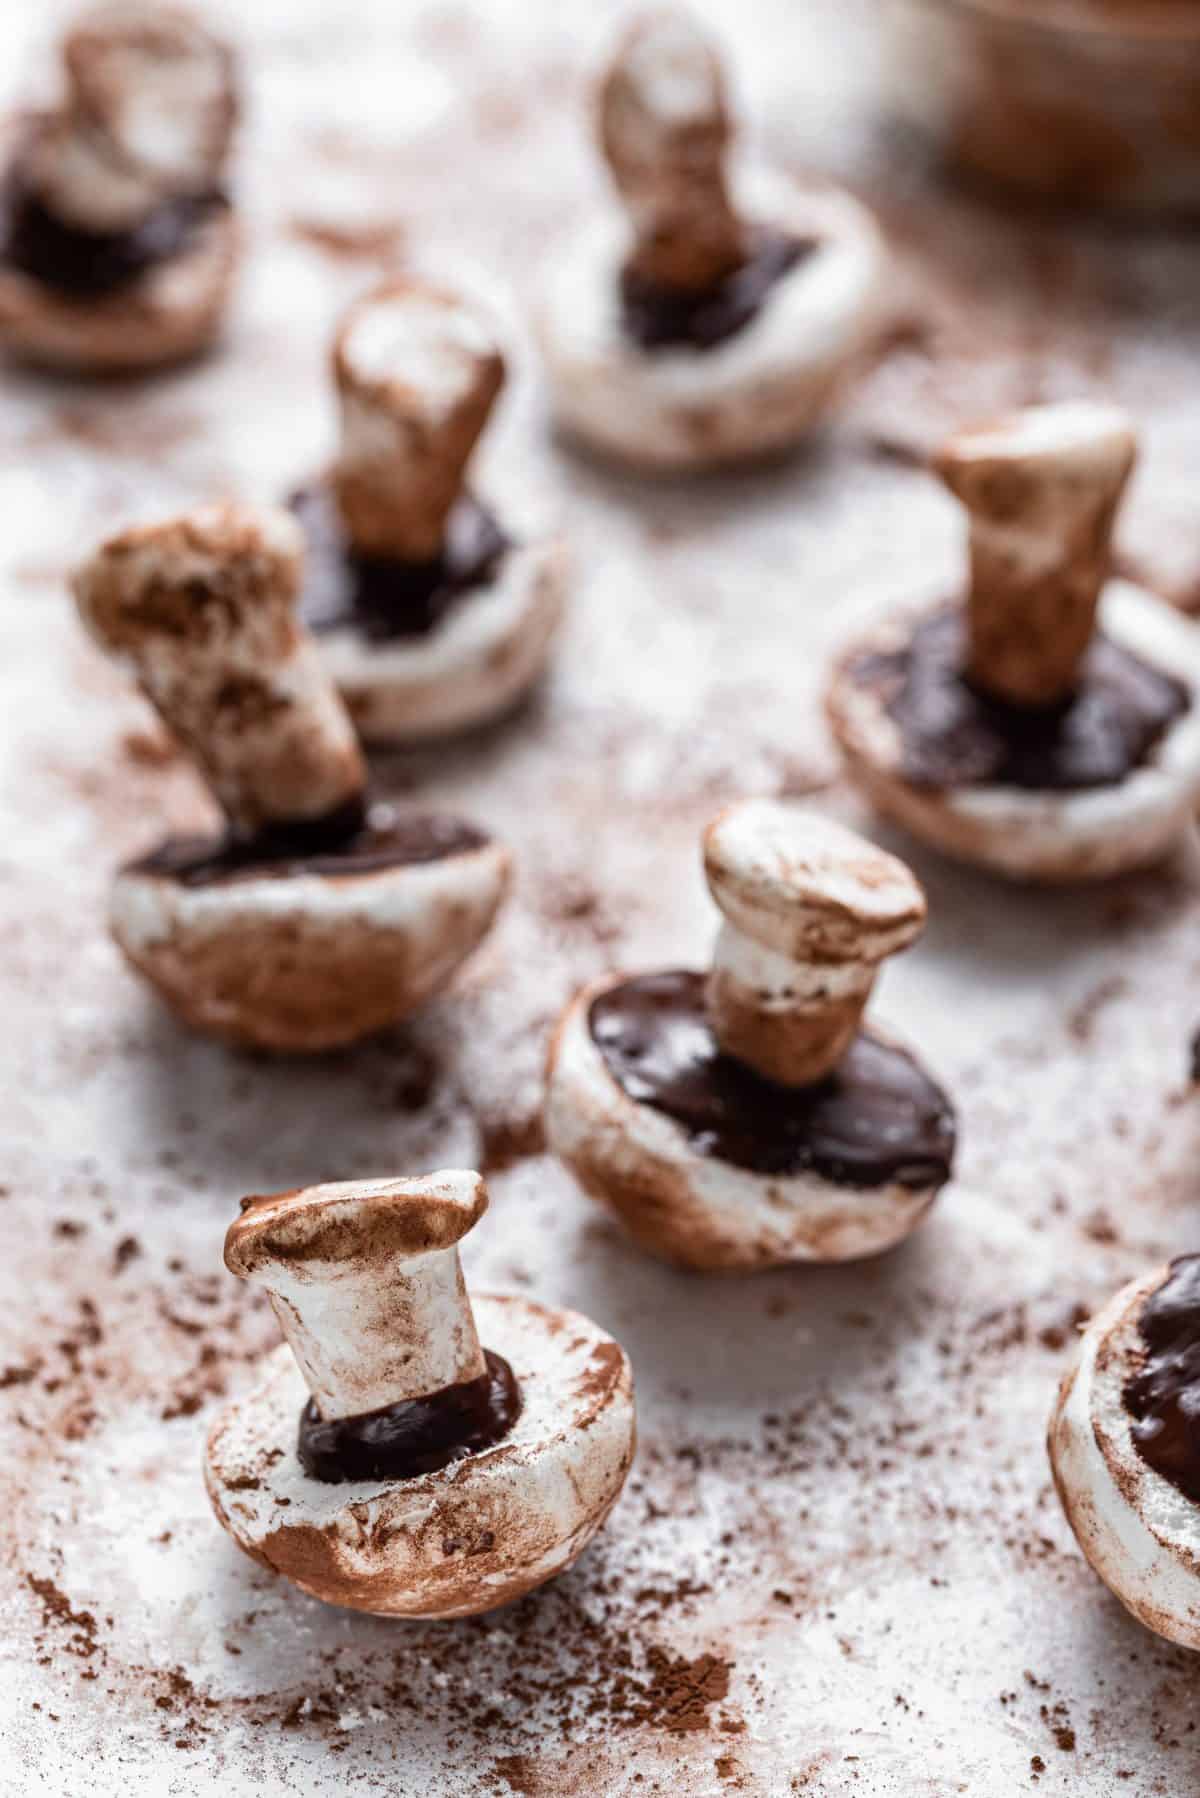 assembling the meringue mushrooms on cookie sheet